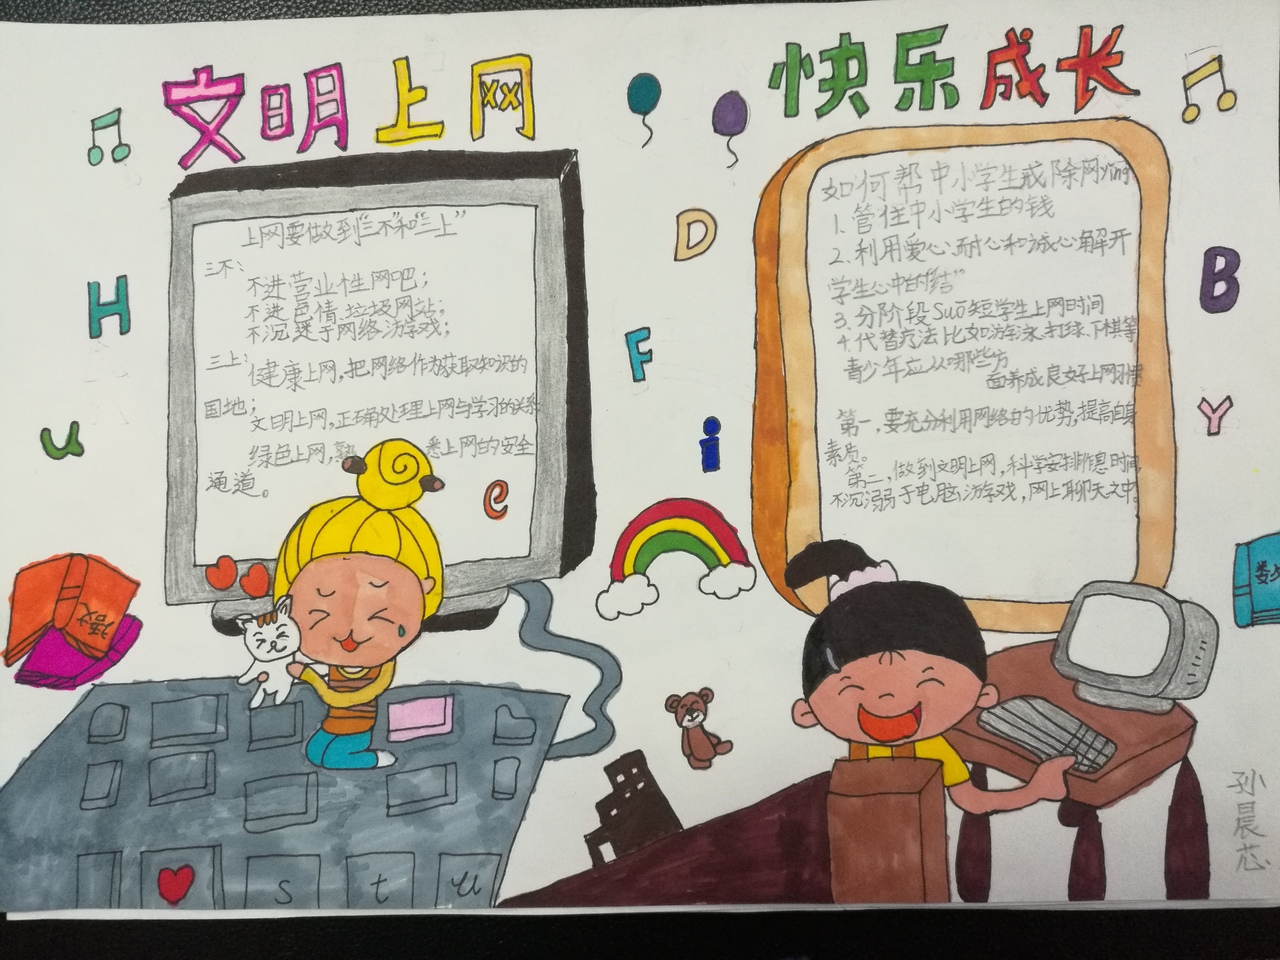 2017国家网络安全宣传周丽水市青少年宫学员漫画作品展示